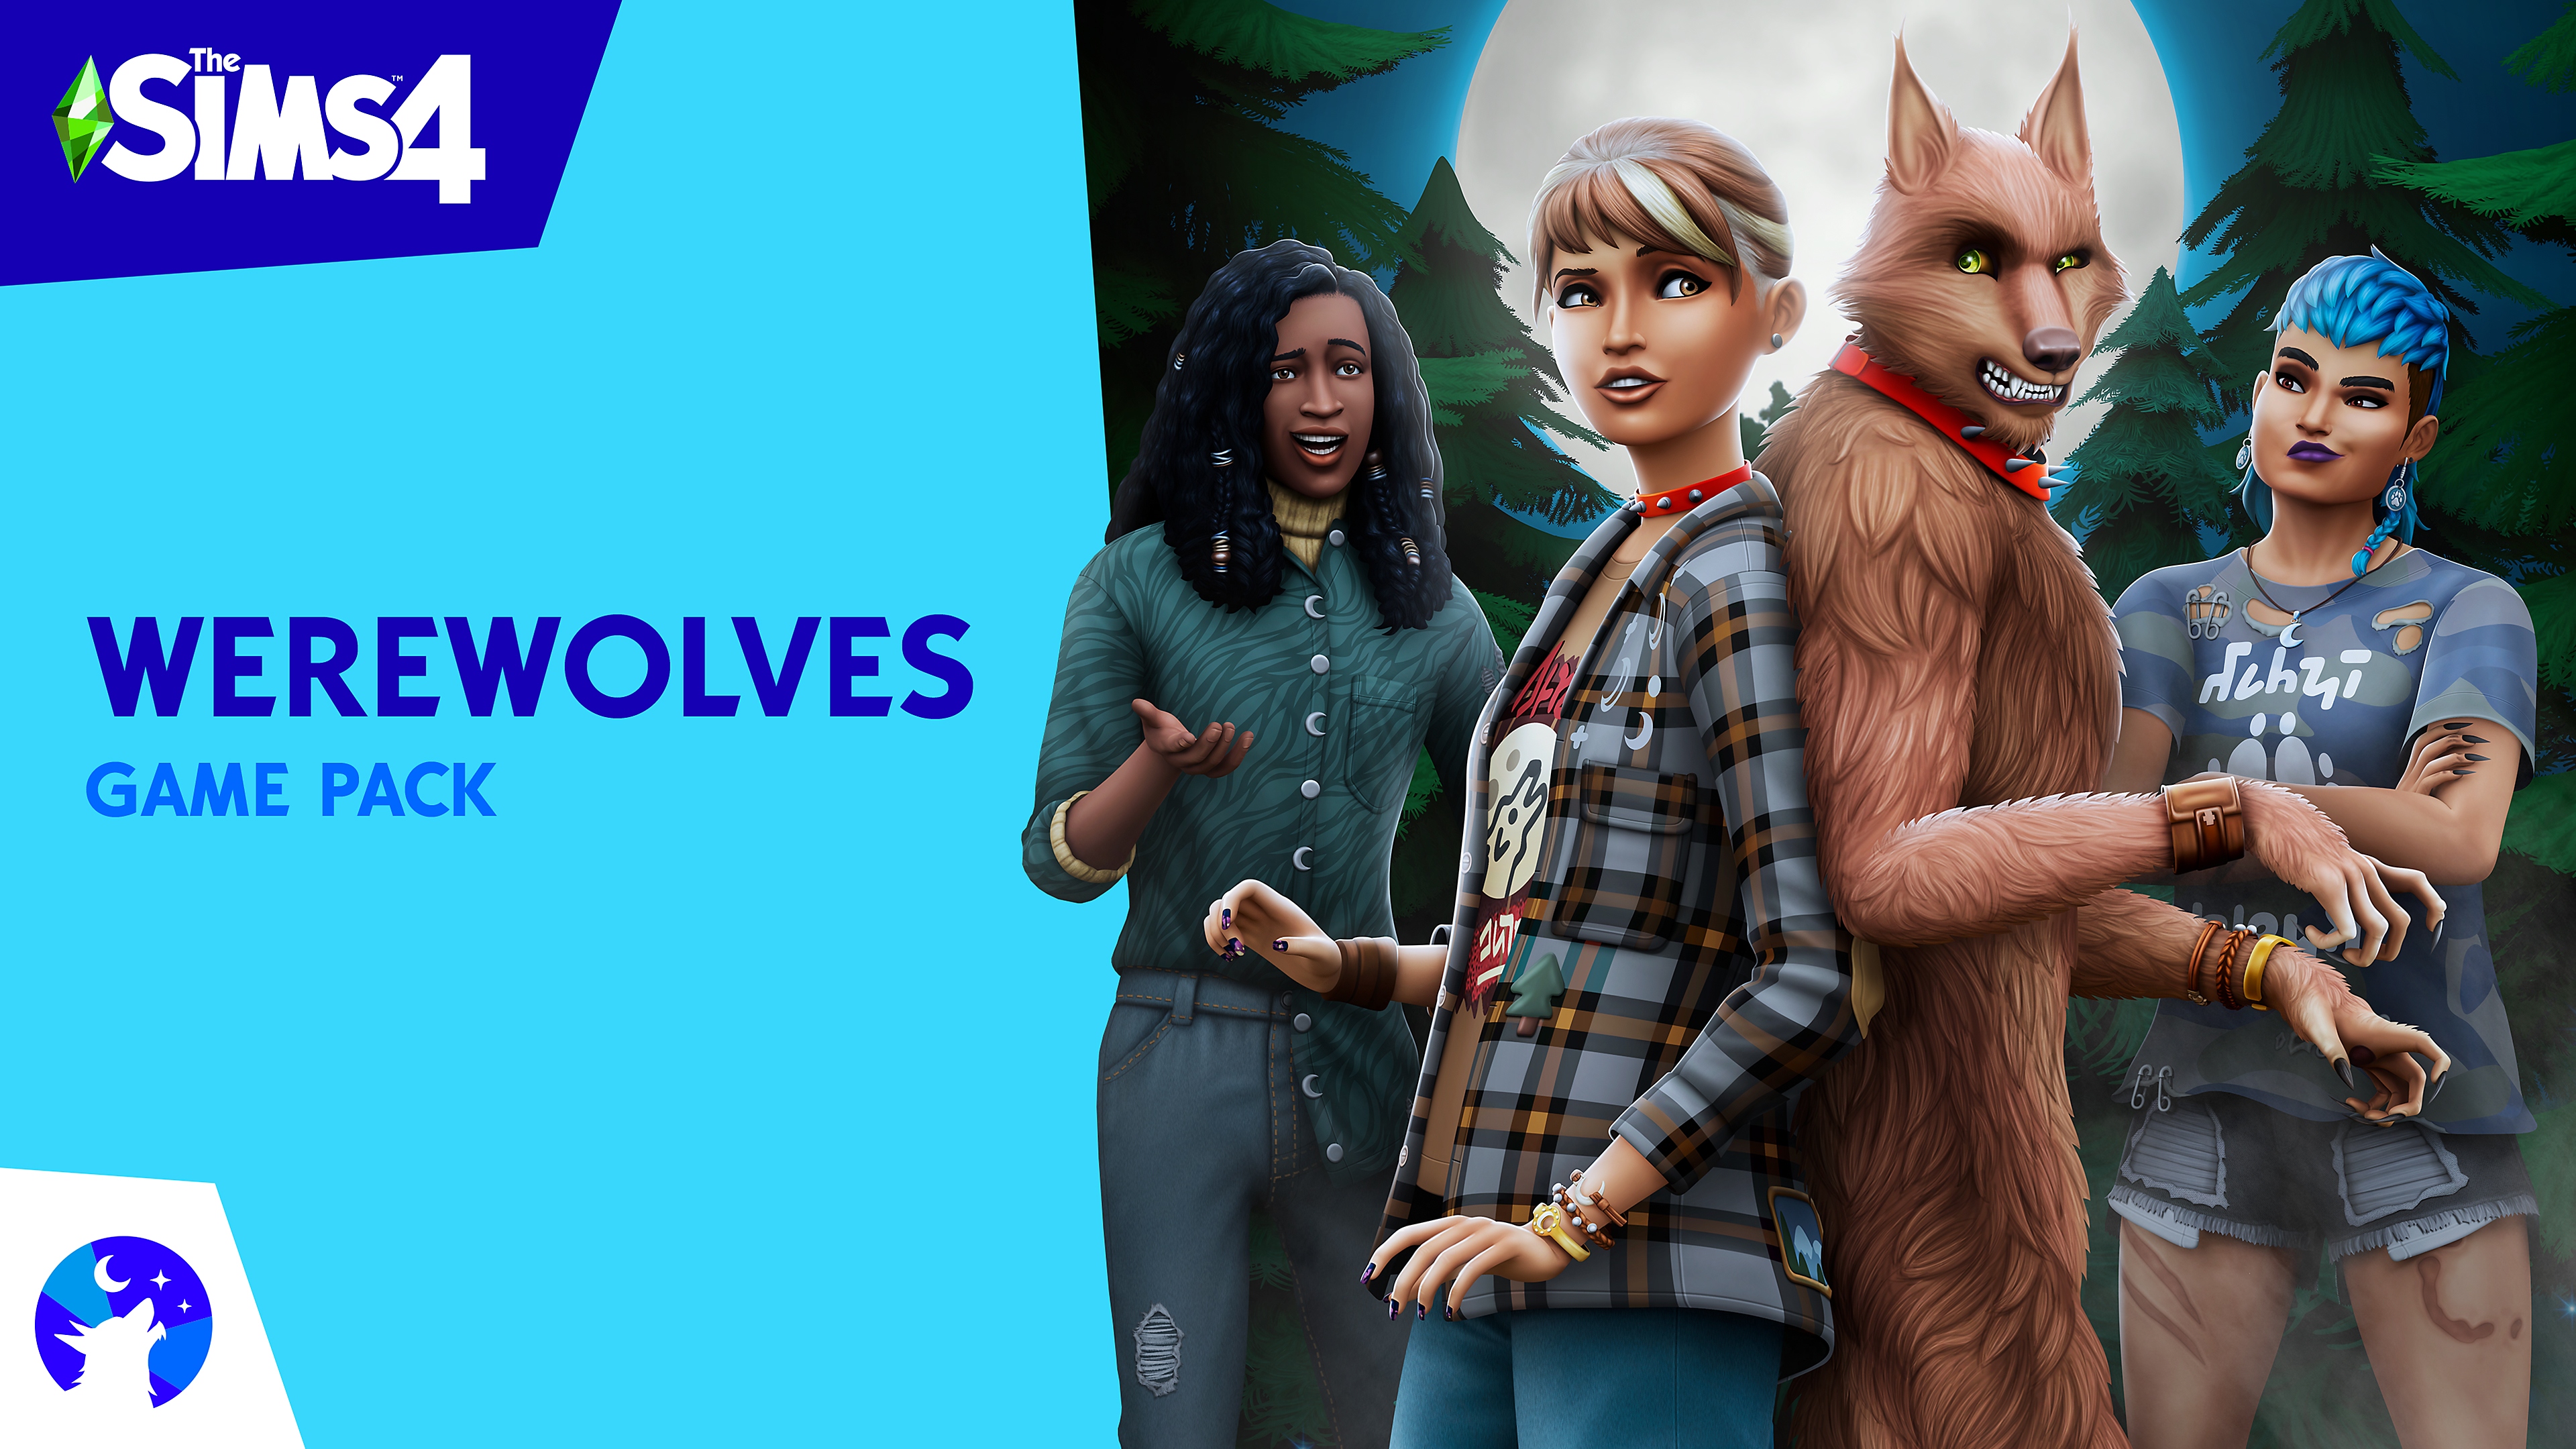 The Sims 4 Werewolves oyun paketi Sims karakterleri ve bir werewolf içeren ana görsel